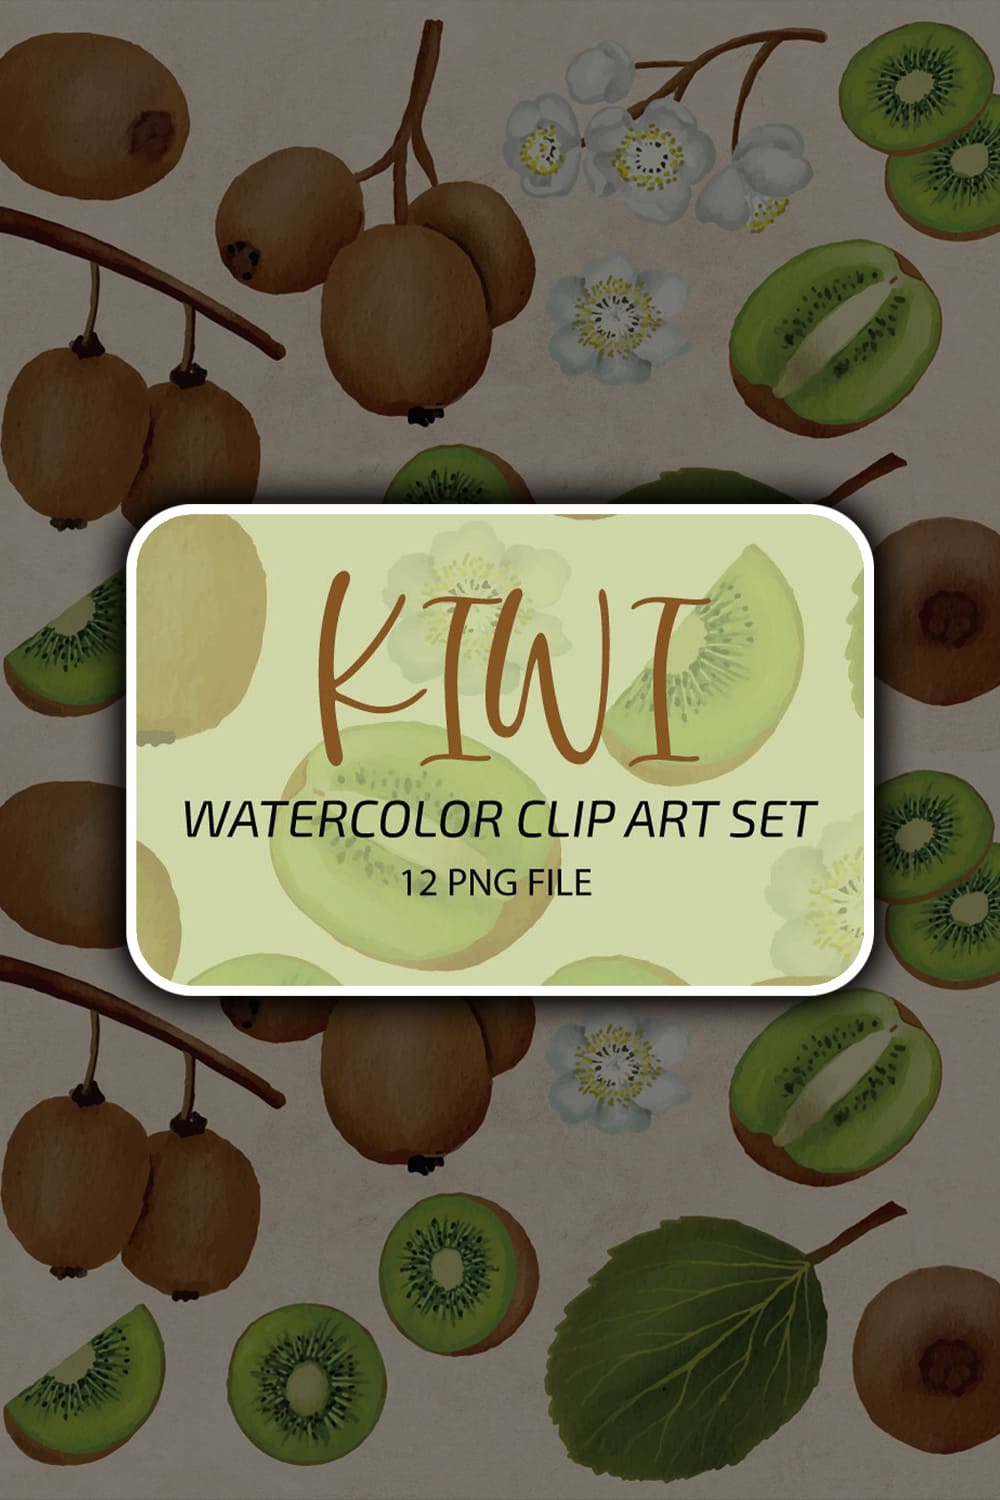 1576765 kiwi fruit watercolor clip art set png pinterest 1000 1500